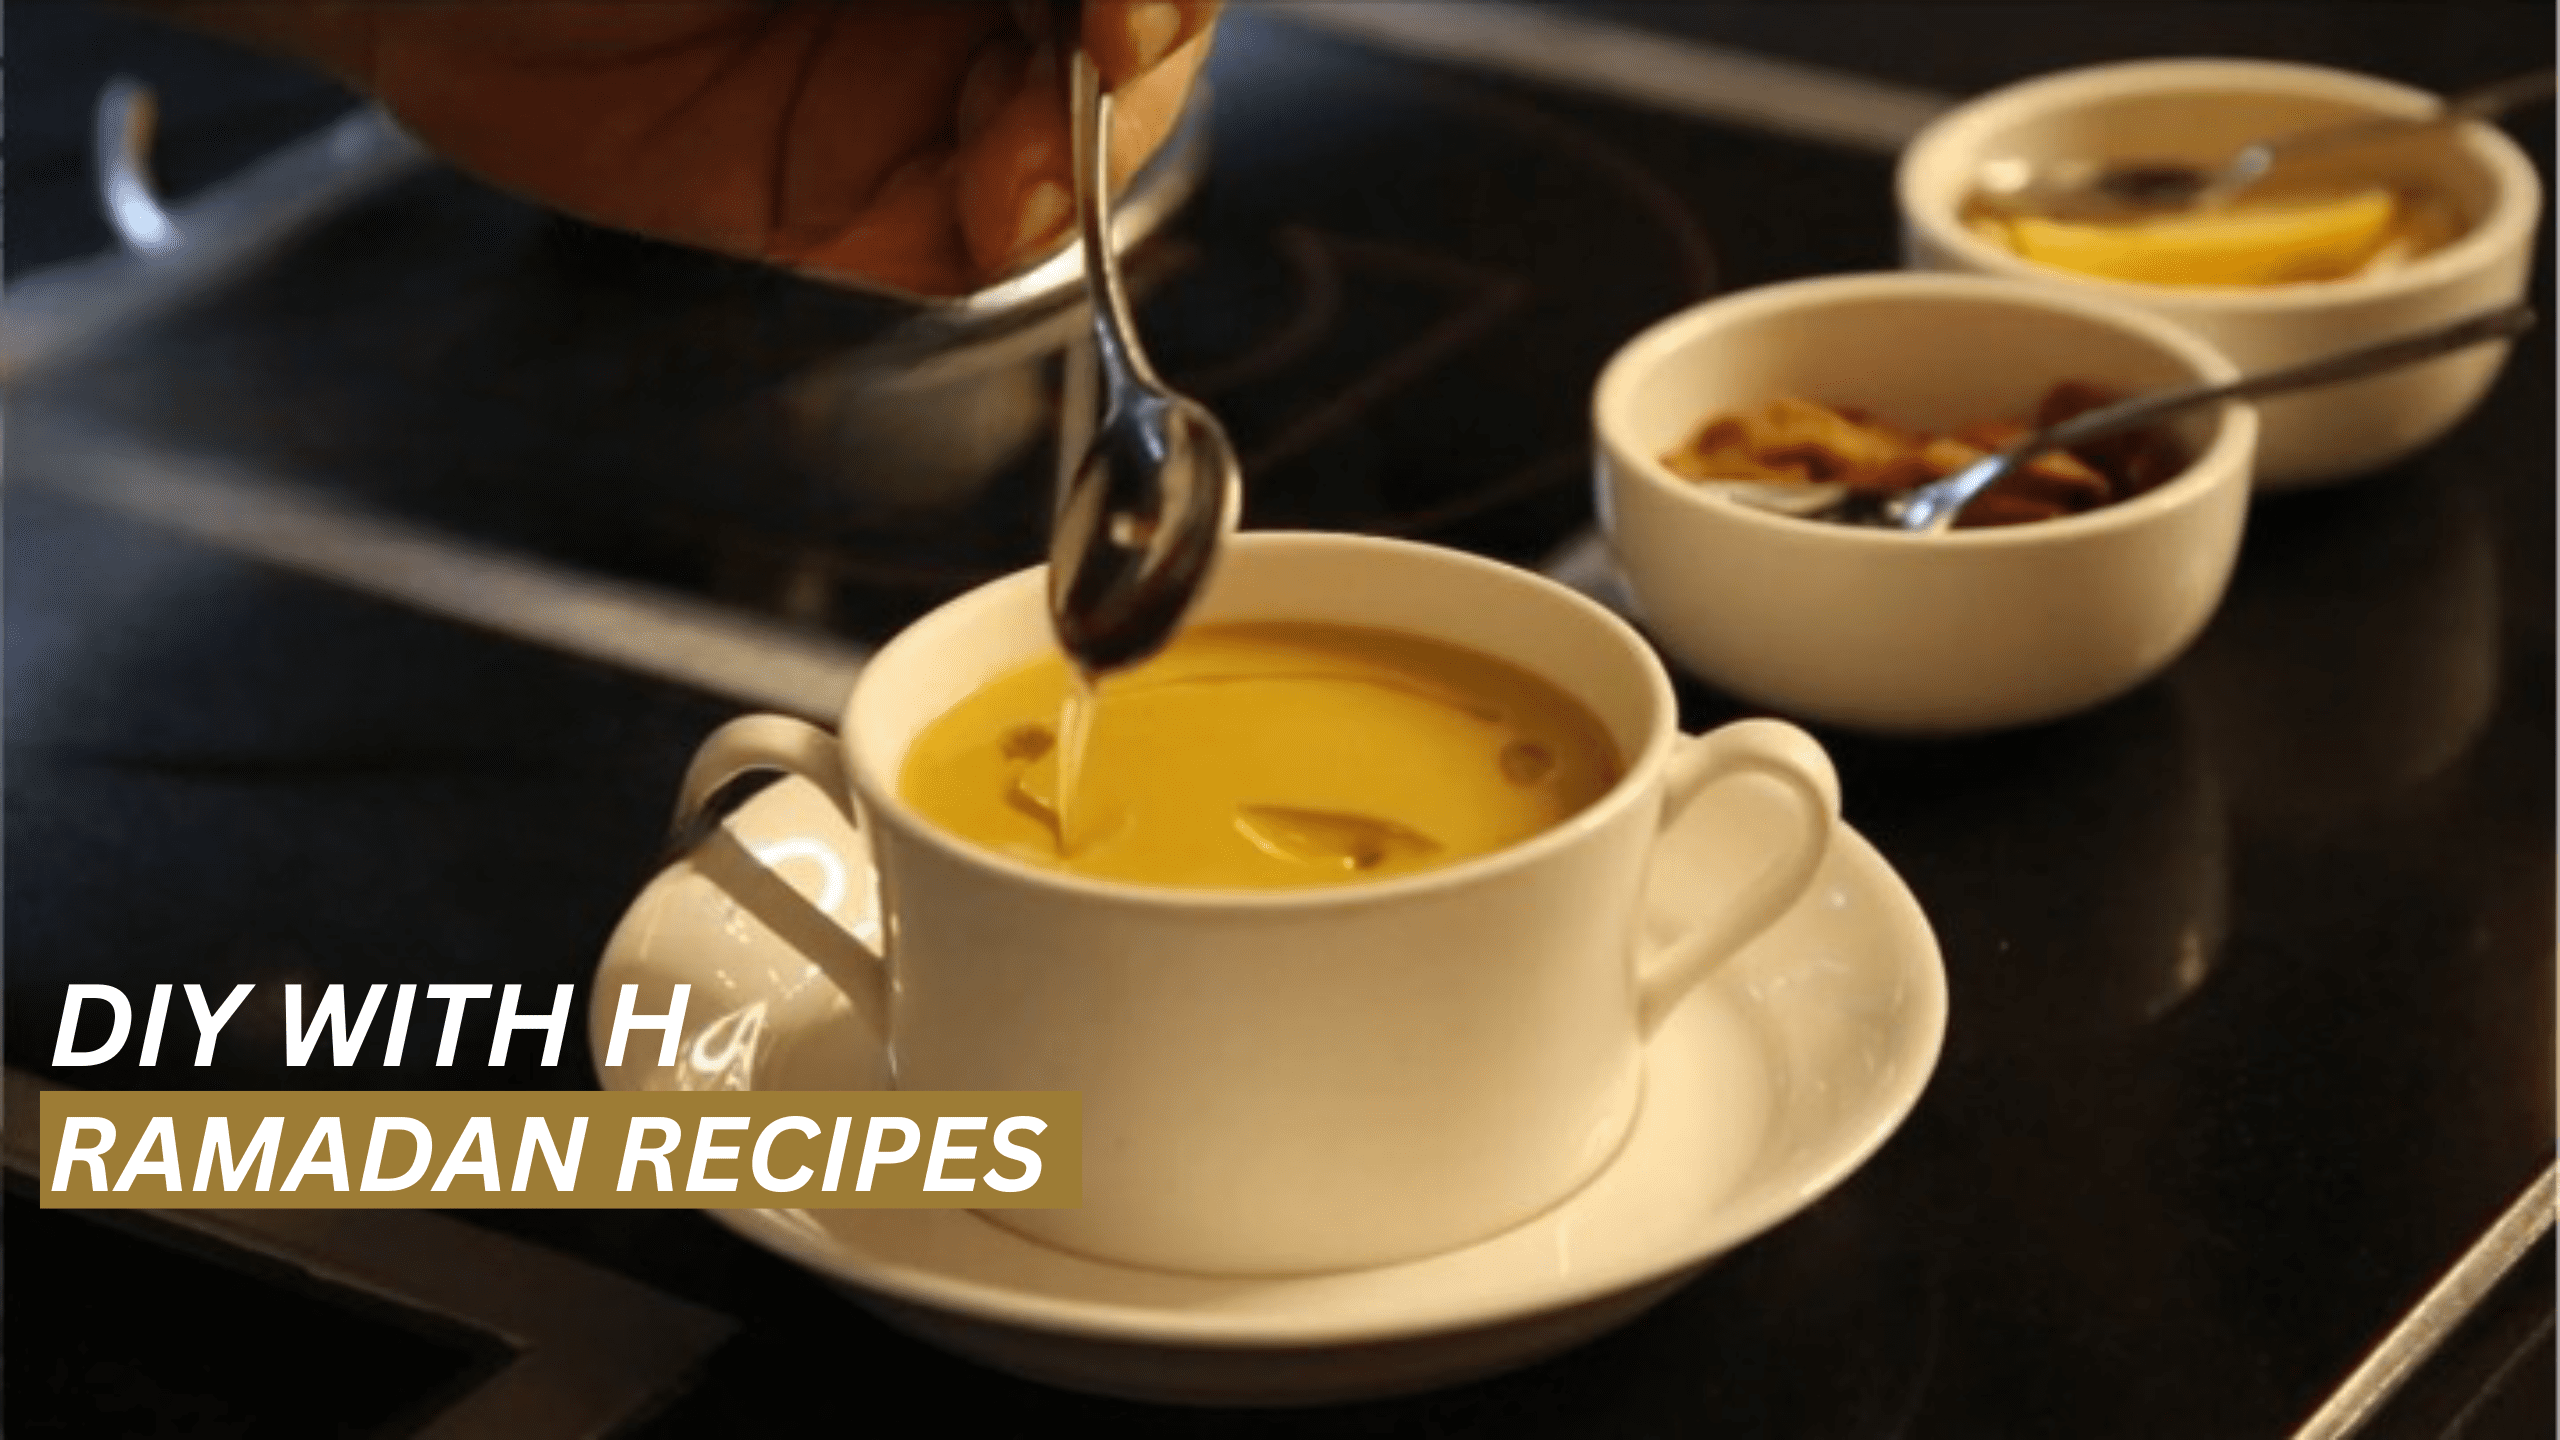 DIY with H | Ramadan recipes